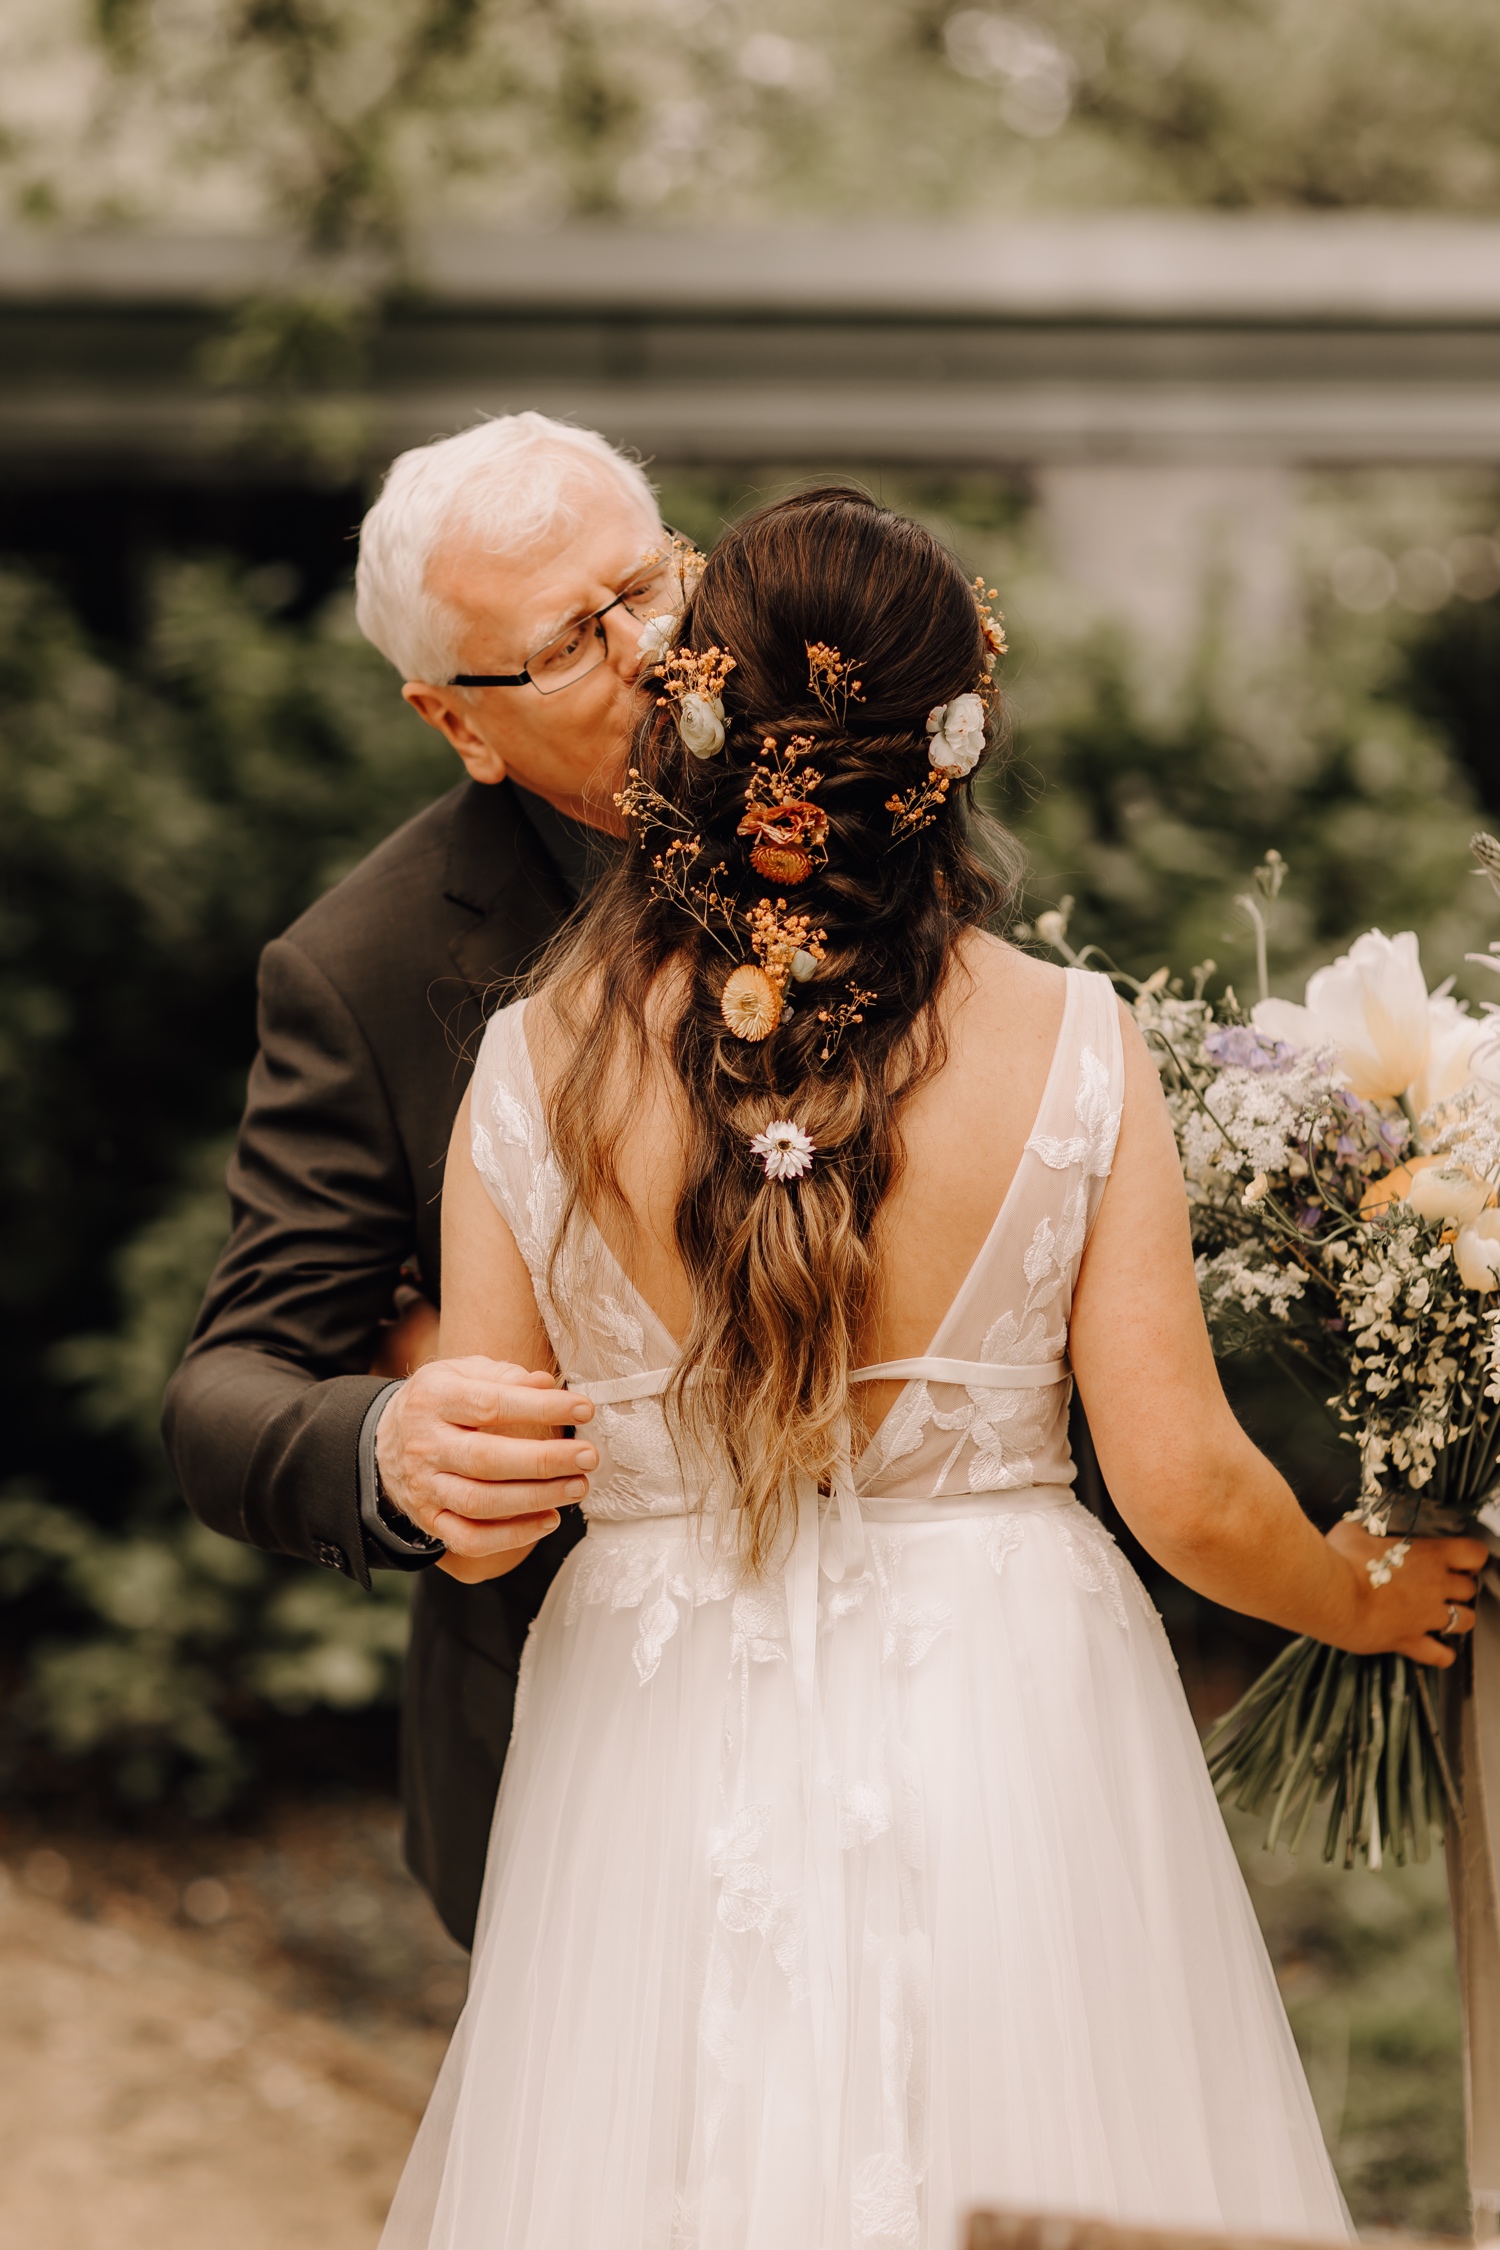 Huwelijksfotograaf Limburg - vader kust zijn dochter op het voorhoofd